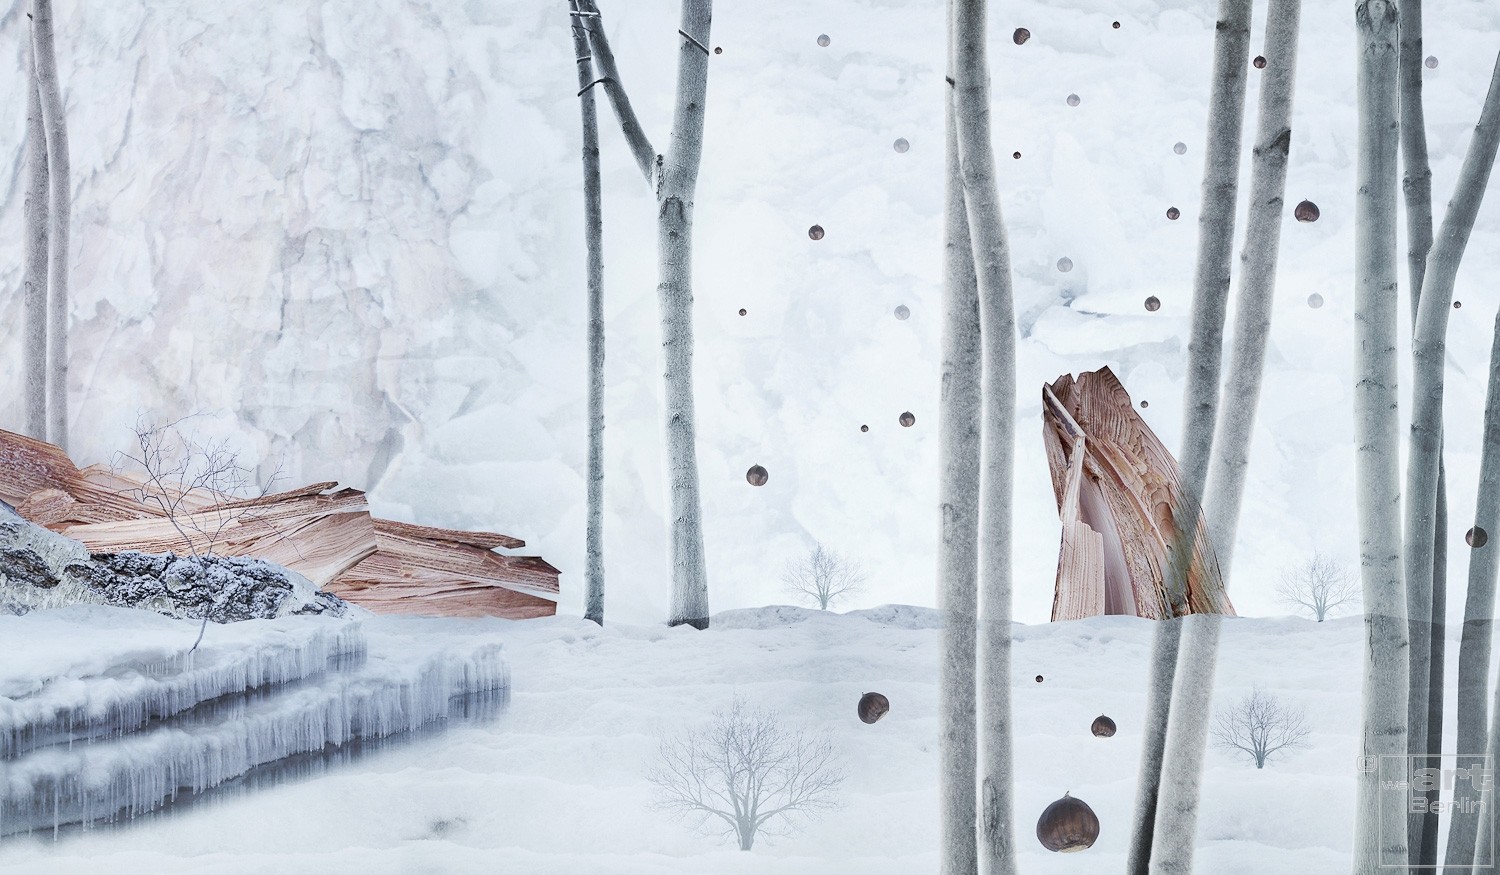 Winter Landscape | Fotografie von Theresa Lambrecht, Fotodruck auf Alu-Dibond, limitierte Edition